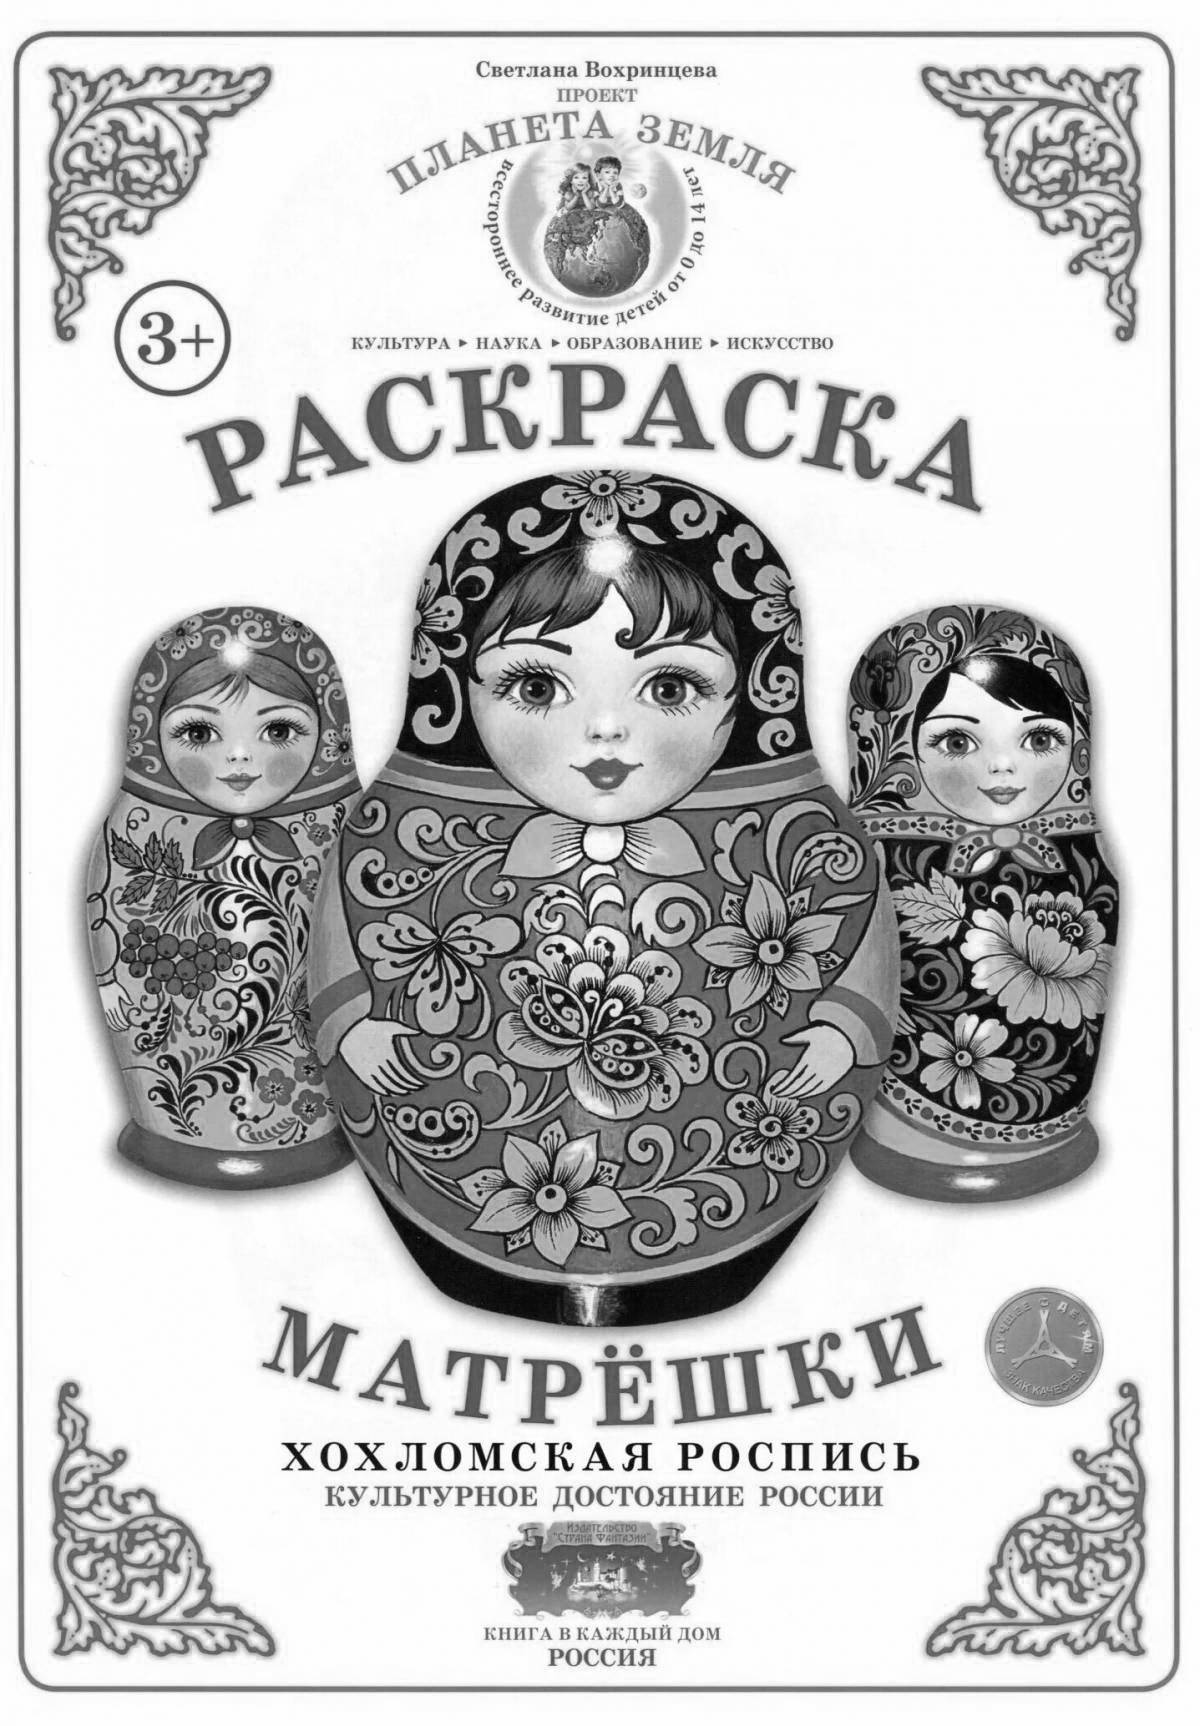 Coloring exquisite Khokhloma matryoshka dolls